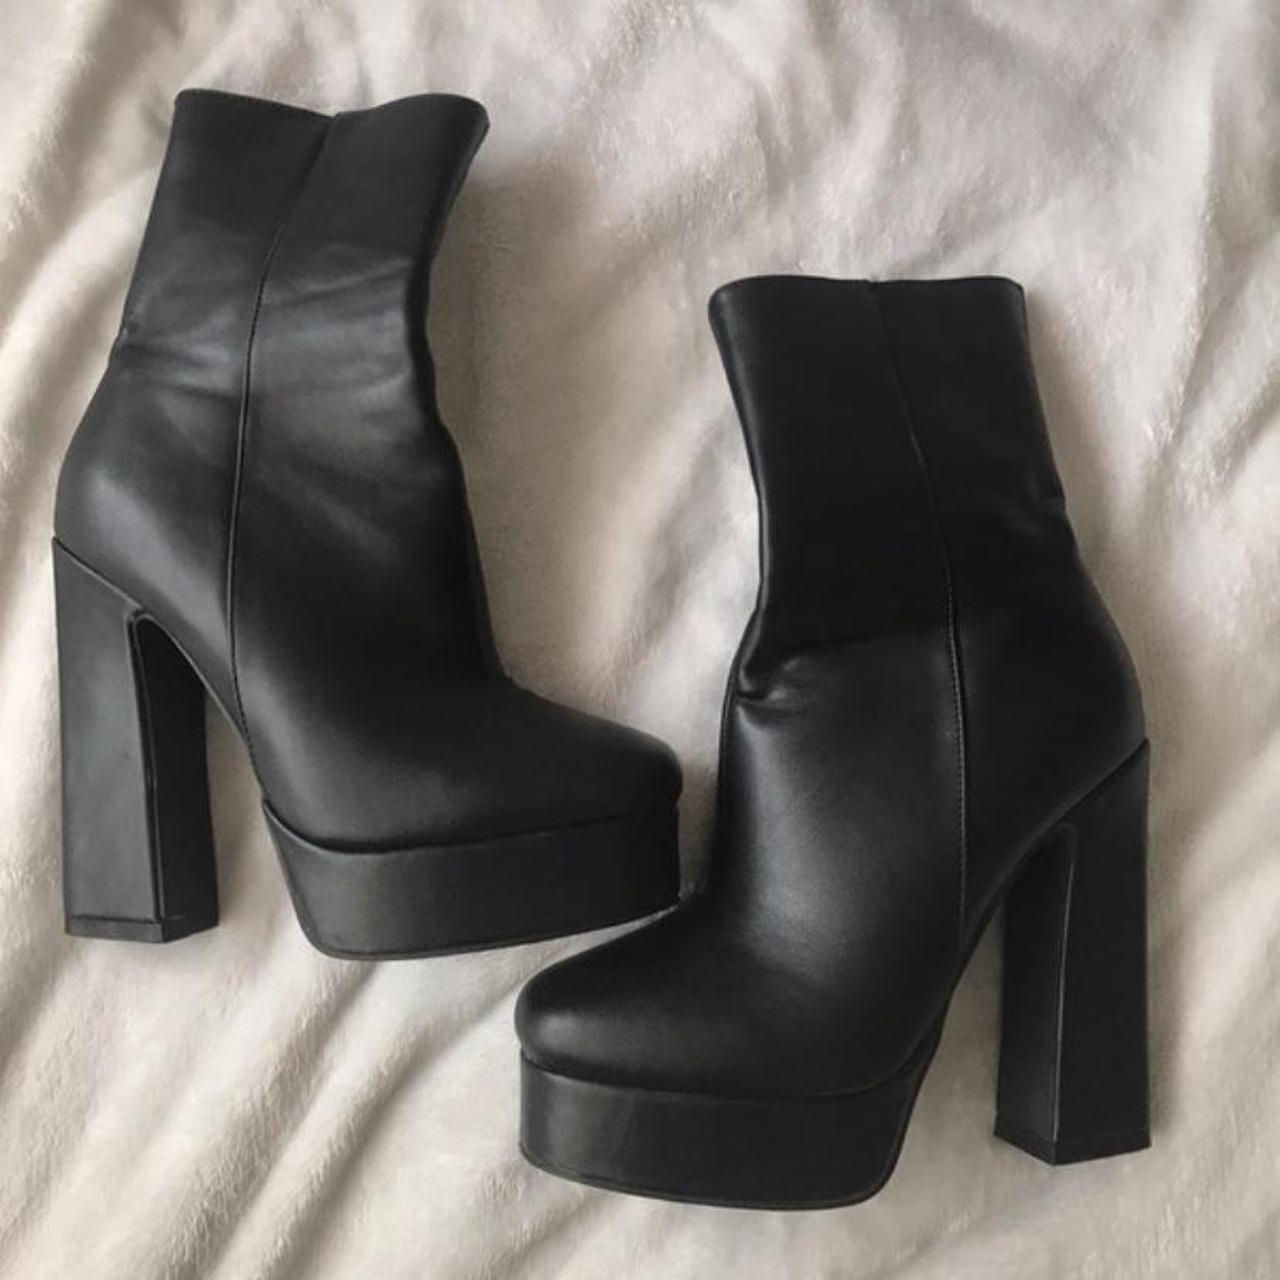 PrettyLittleThing Women's Black Boots | Depop